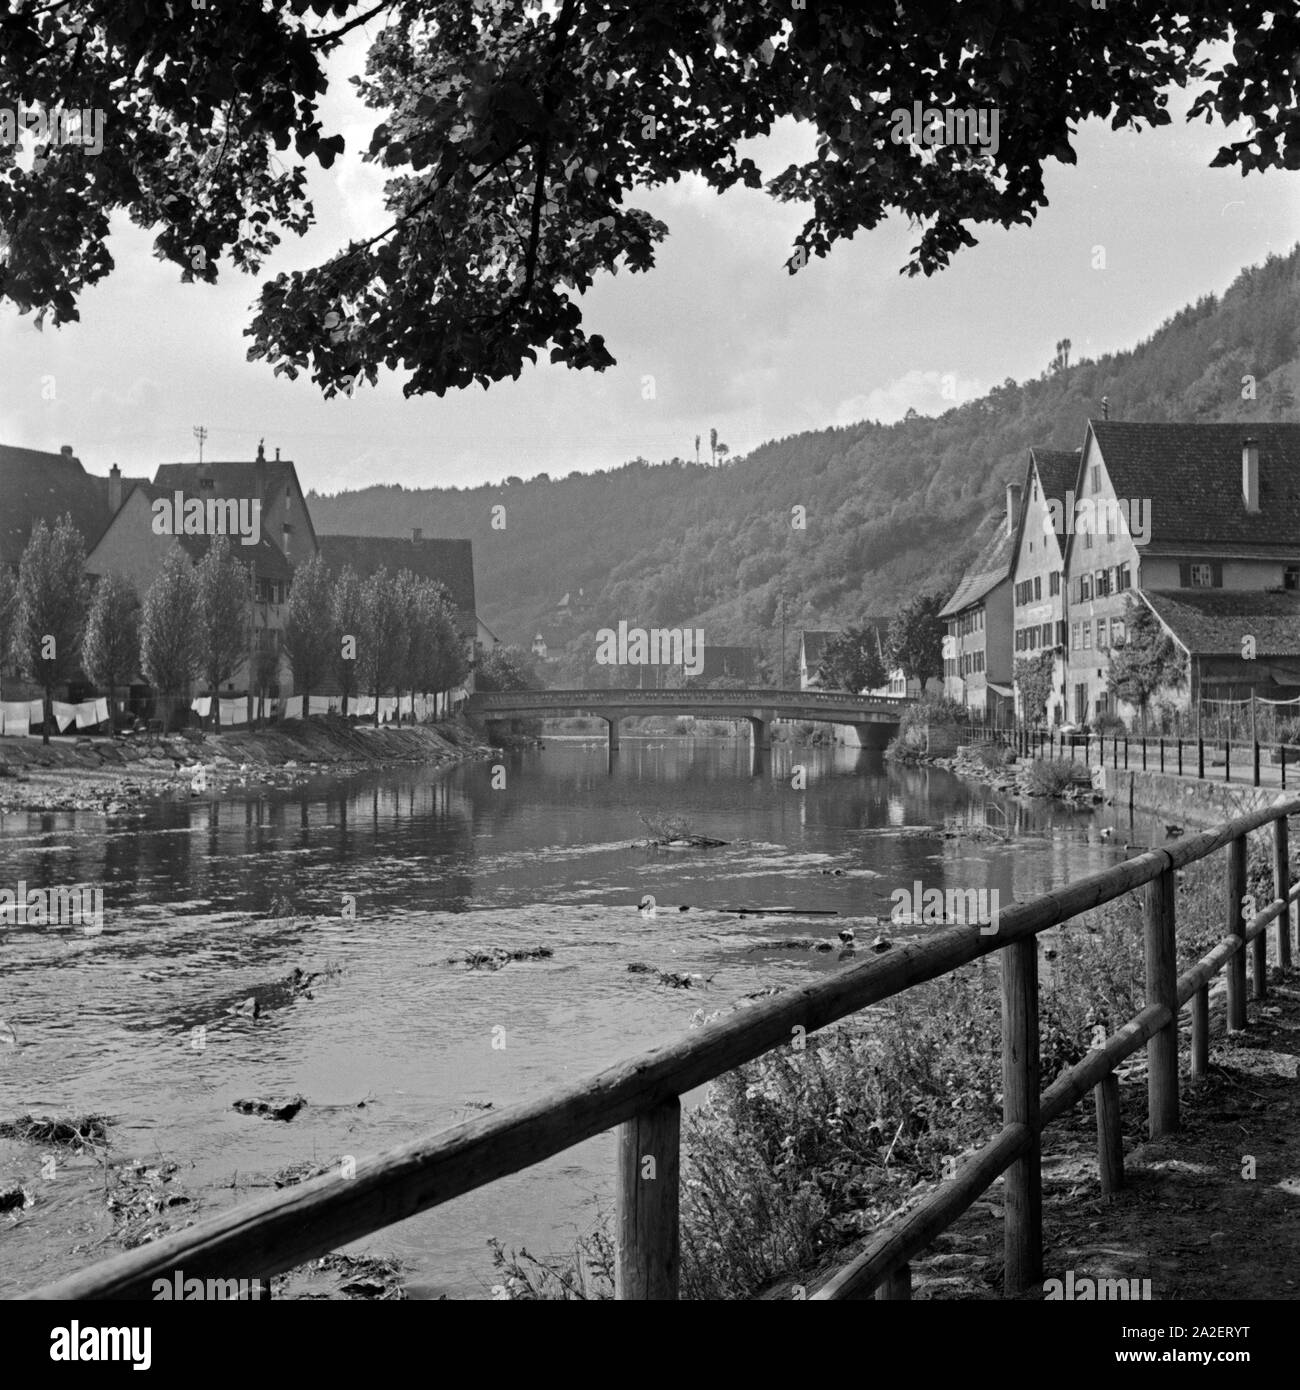 Als nebenklägerin am Ufer des Neckar in Sulz, Deutschland 1930er Jahre. Eindruck vom Ufer des Neckar bei Sult, Deutschland 1930. Stockfoto